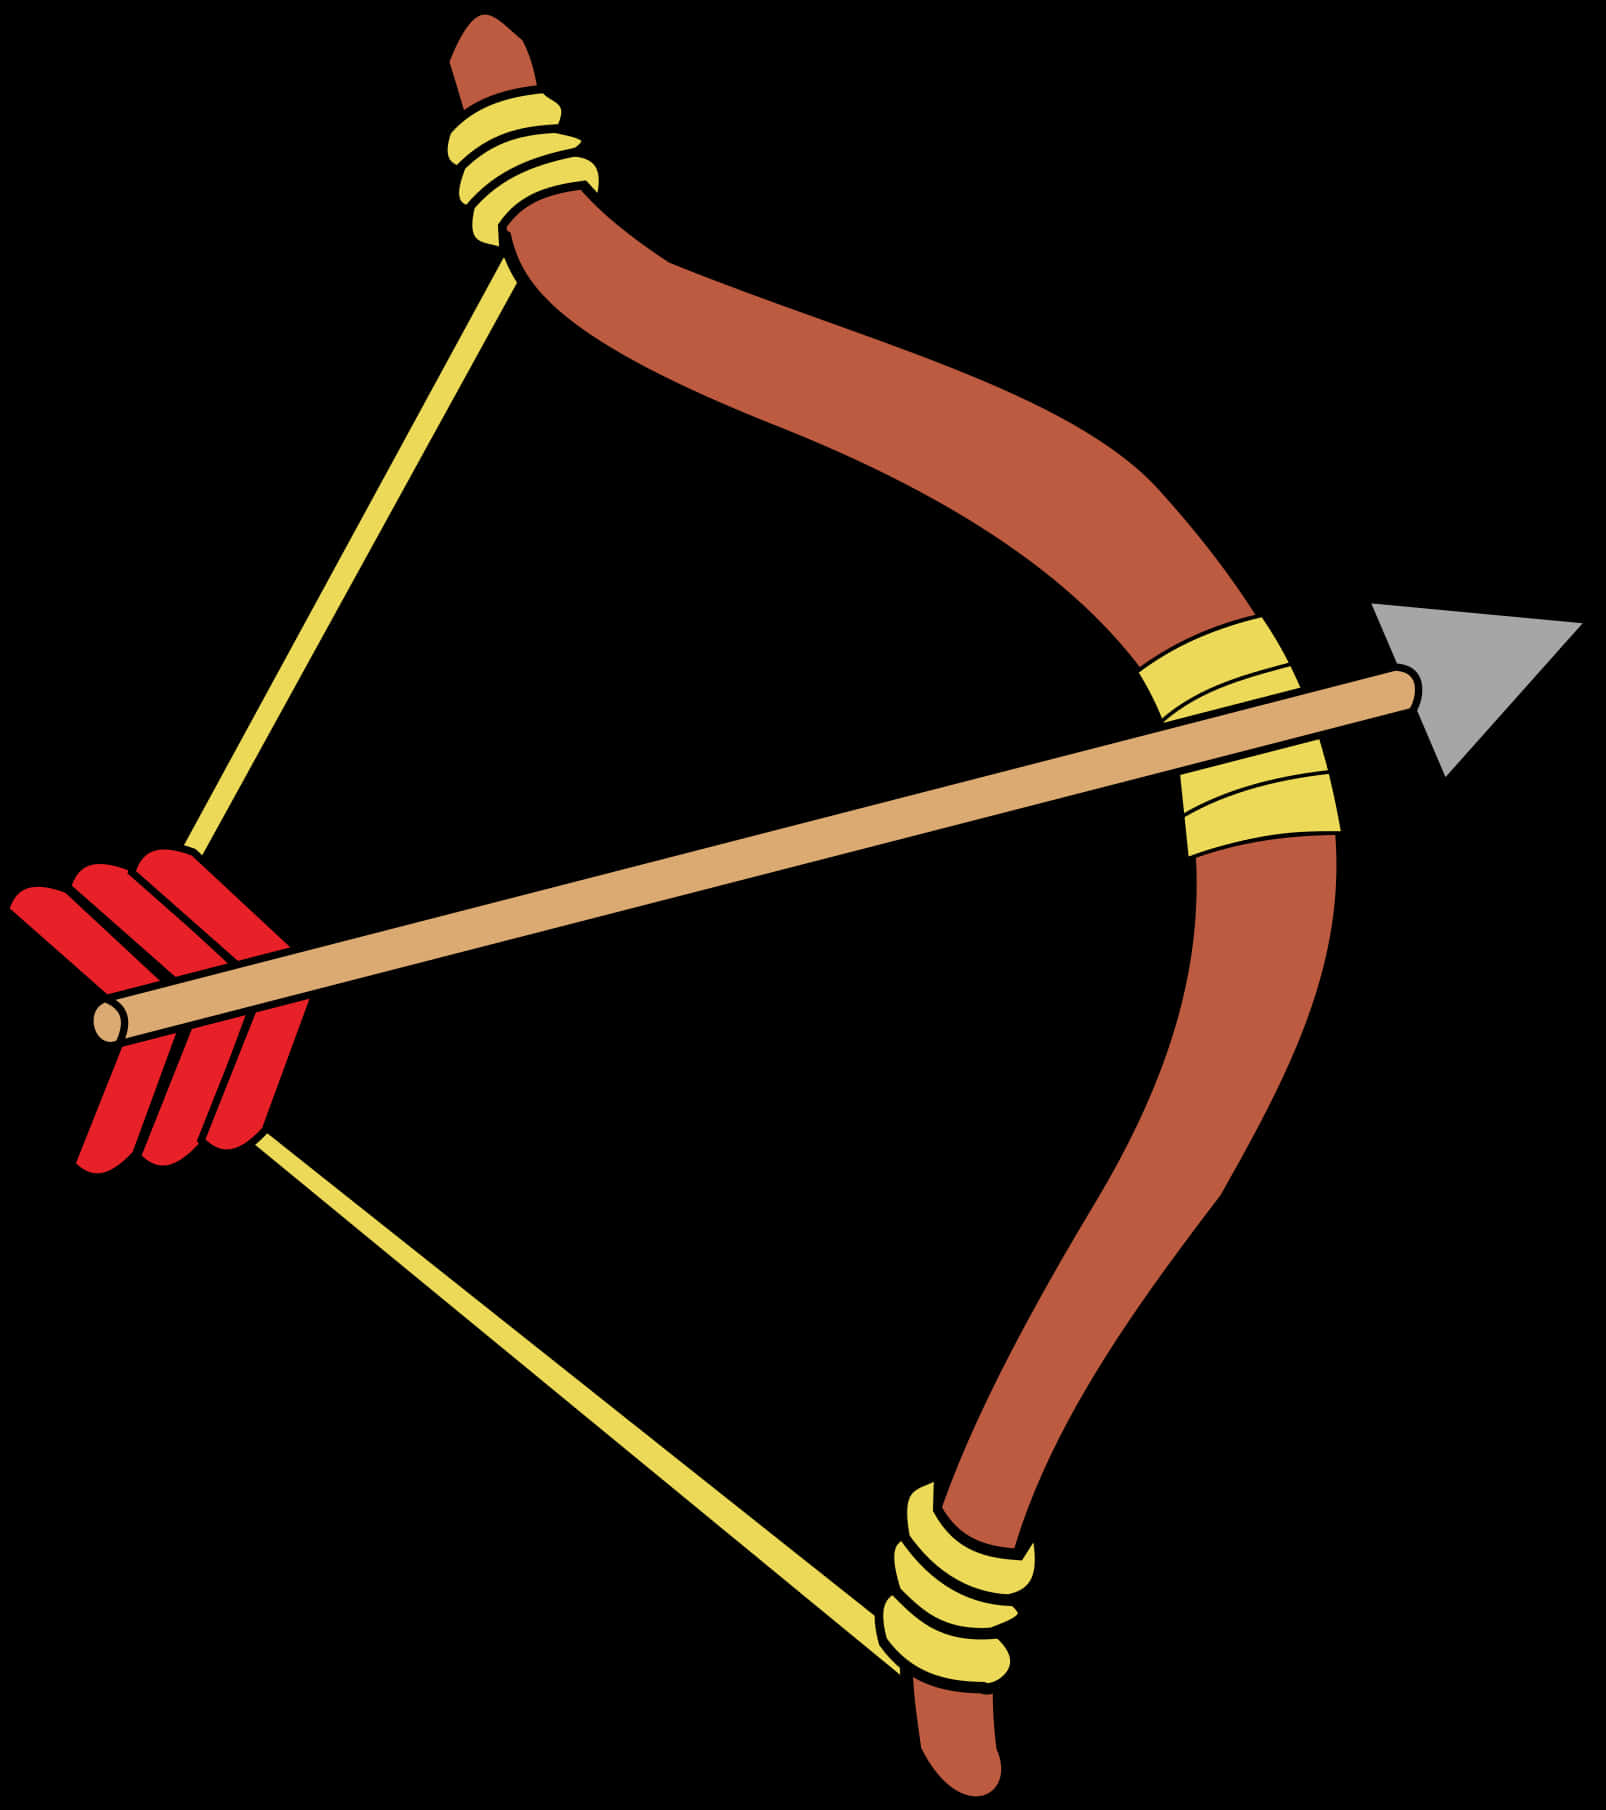 A Cartoon Of A Bow And Arrow